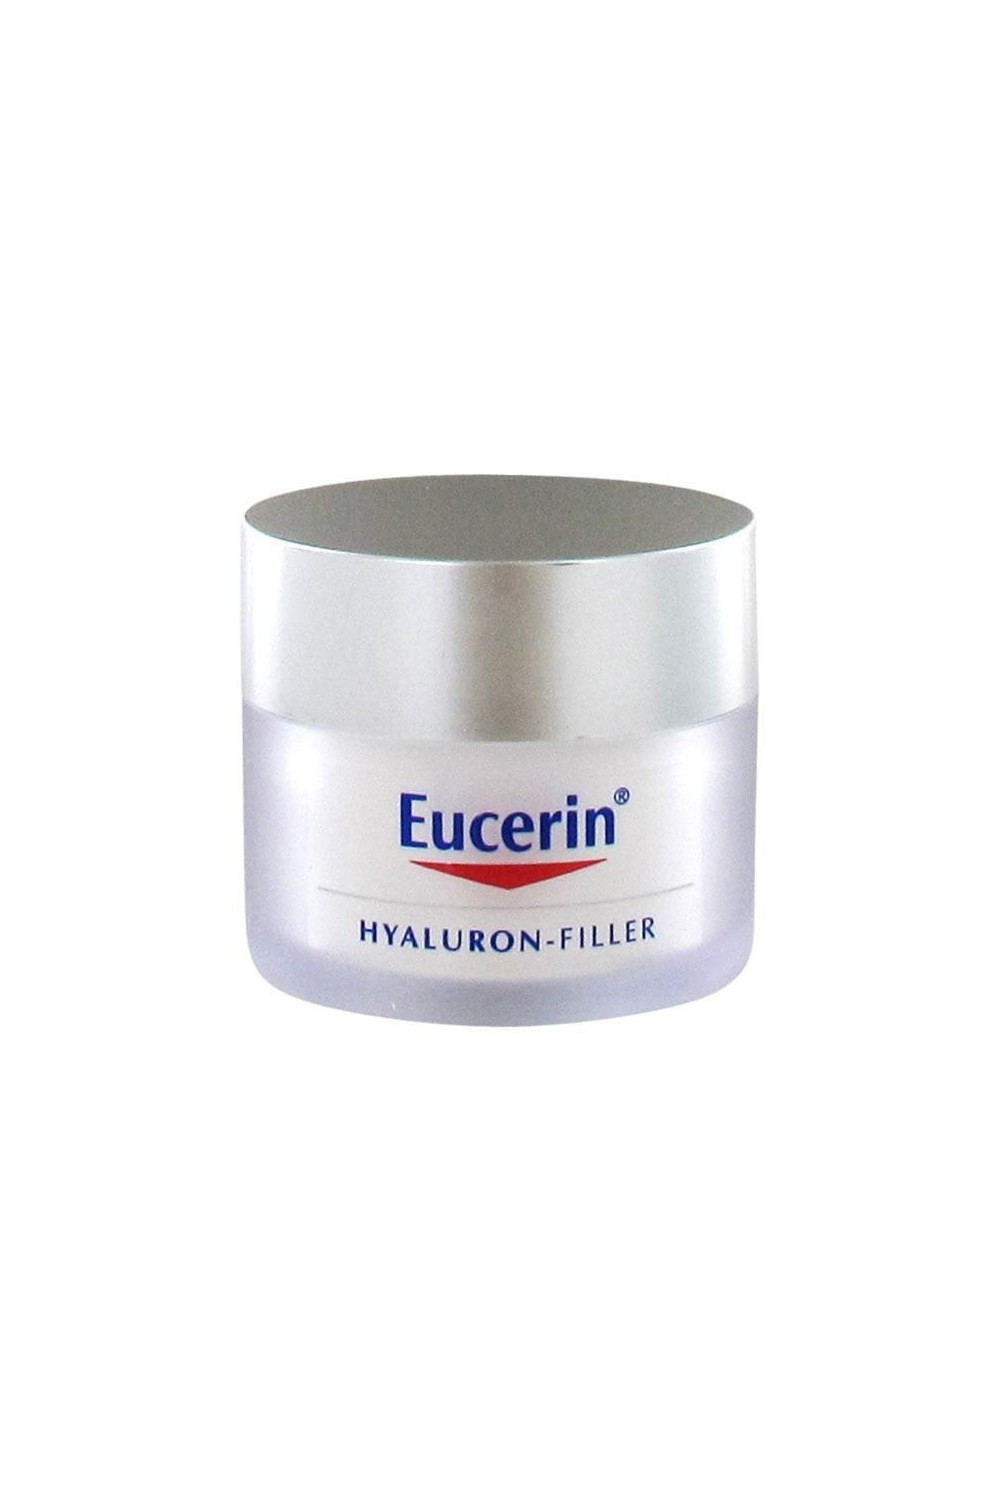 Eucerin Hyaluron Filler Day Cream Dry Skin Spf15, 50ml